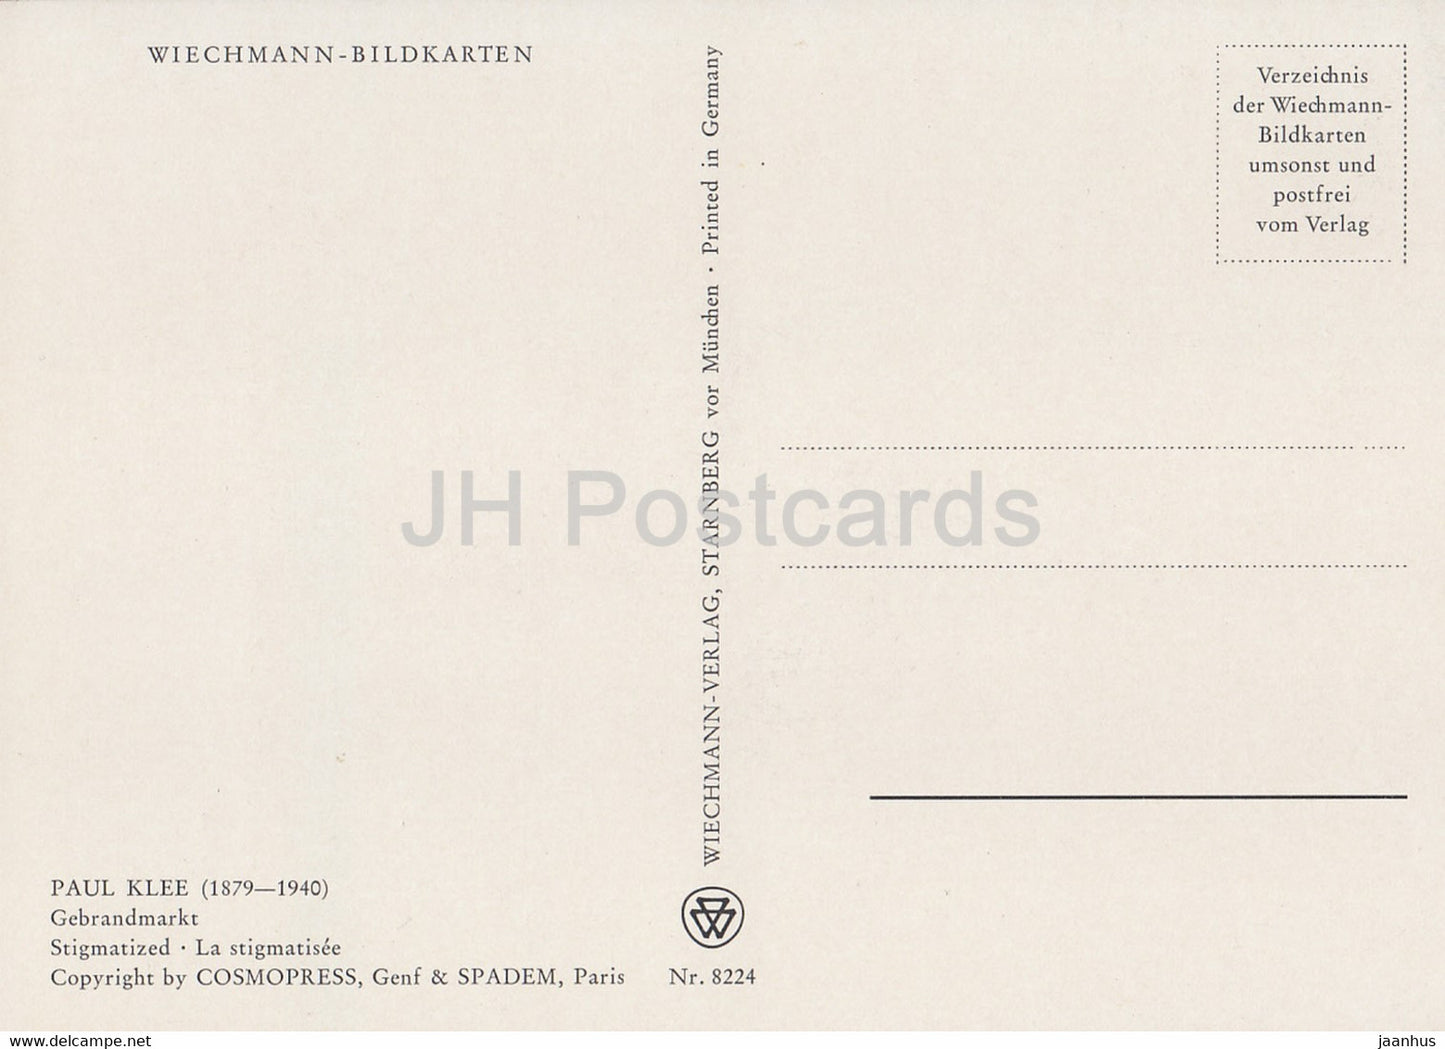 Gemälde von Paul Klee – Gebrandmarkt – Stigmatisiert – 8224 – Deutsche Kunst – Deutschland – unbenutzt